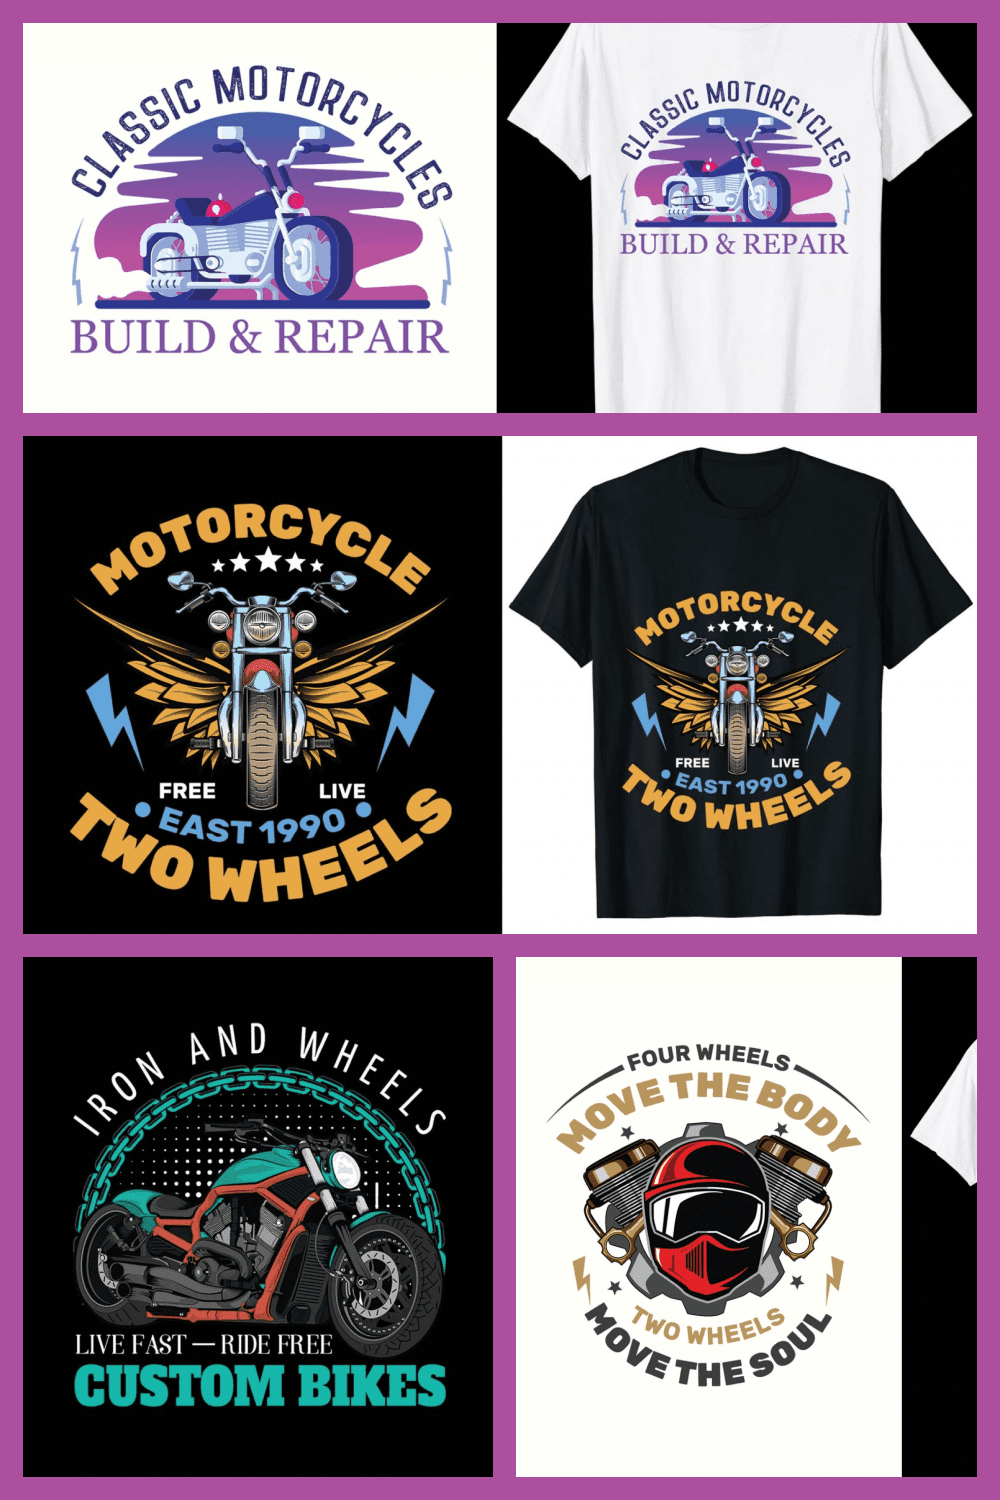 Motorcycle T-shirt Design Bundle - MasterBundles - Pinterest Collage Image.